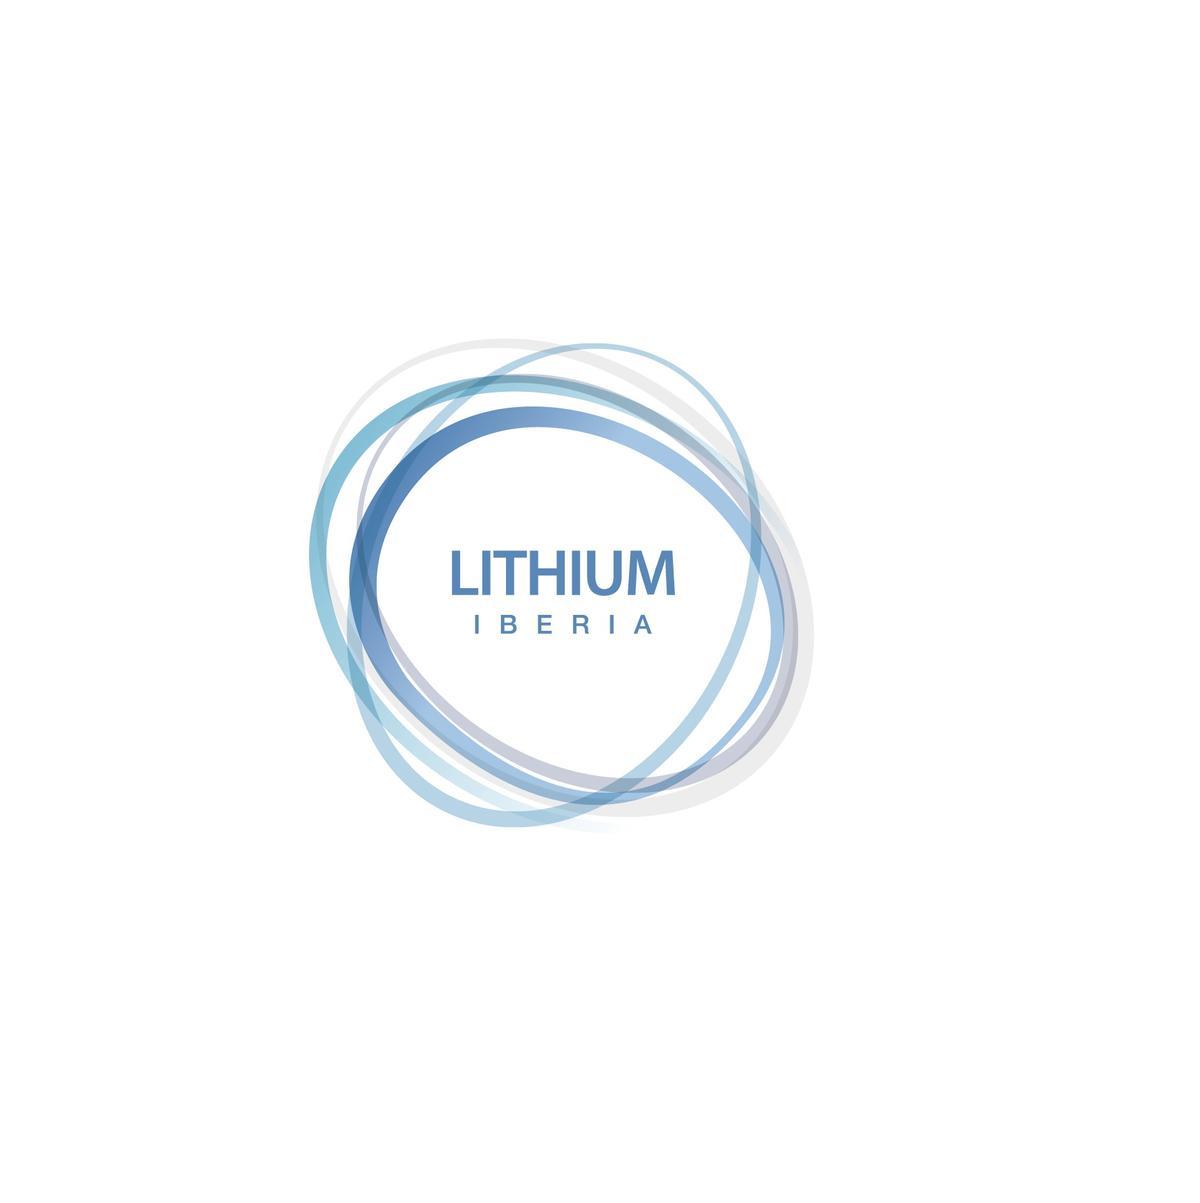 Lithium Iberia